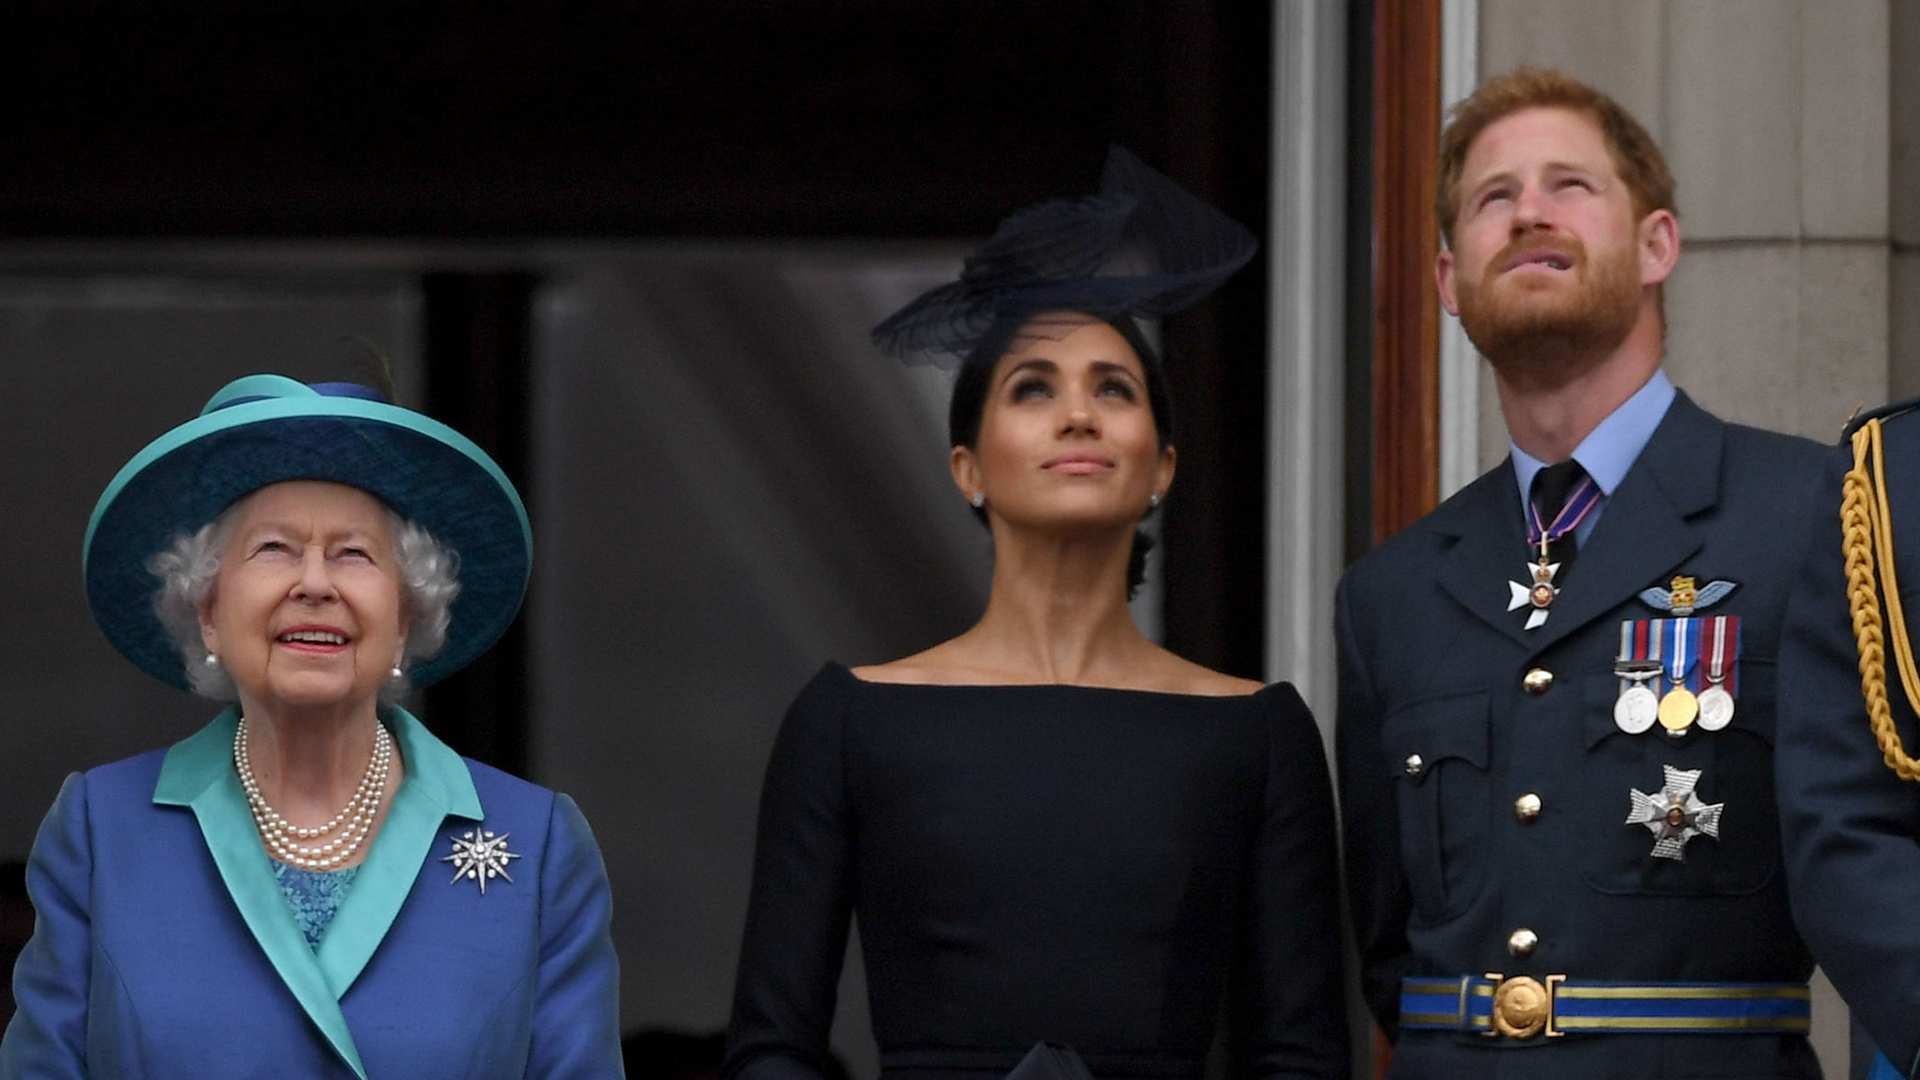 Polémica tras el nacimiento de la hija de Meghan Markle: el príncipe Harry quiere demandar a la BBC por un rumor sobre Lilibet